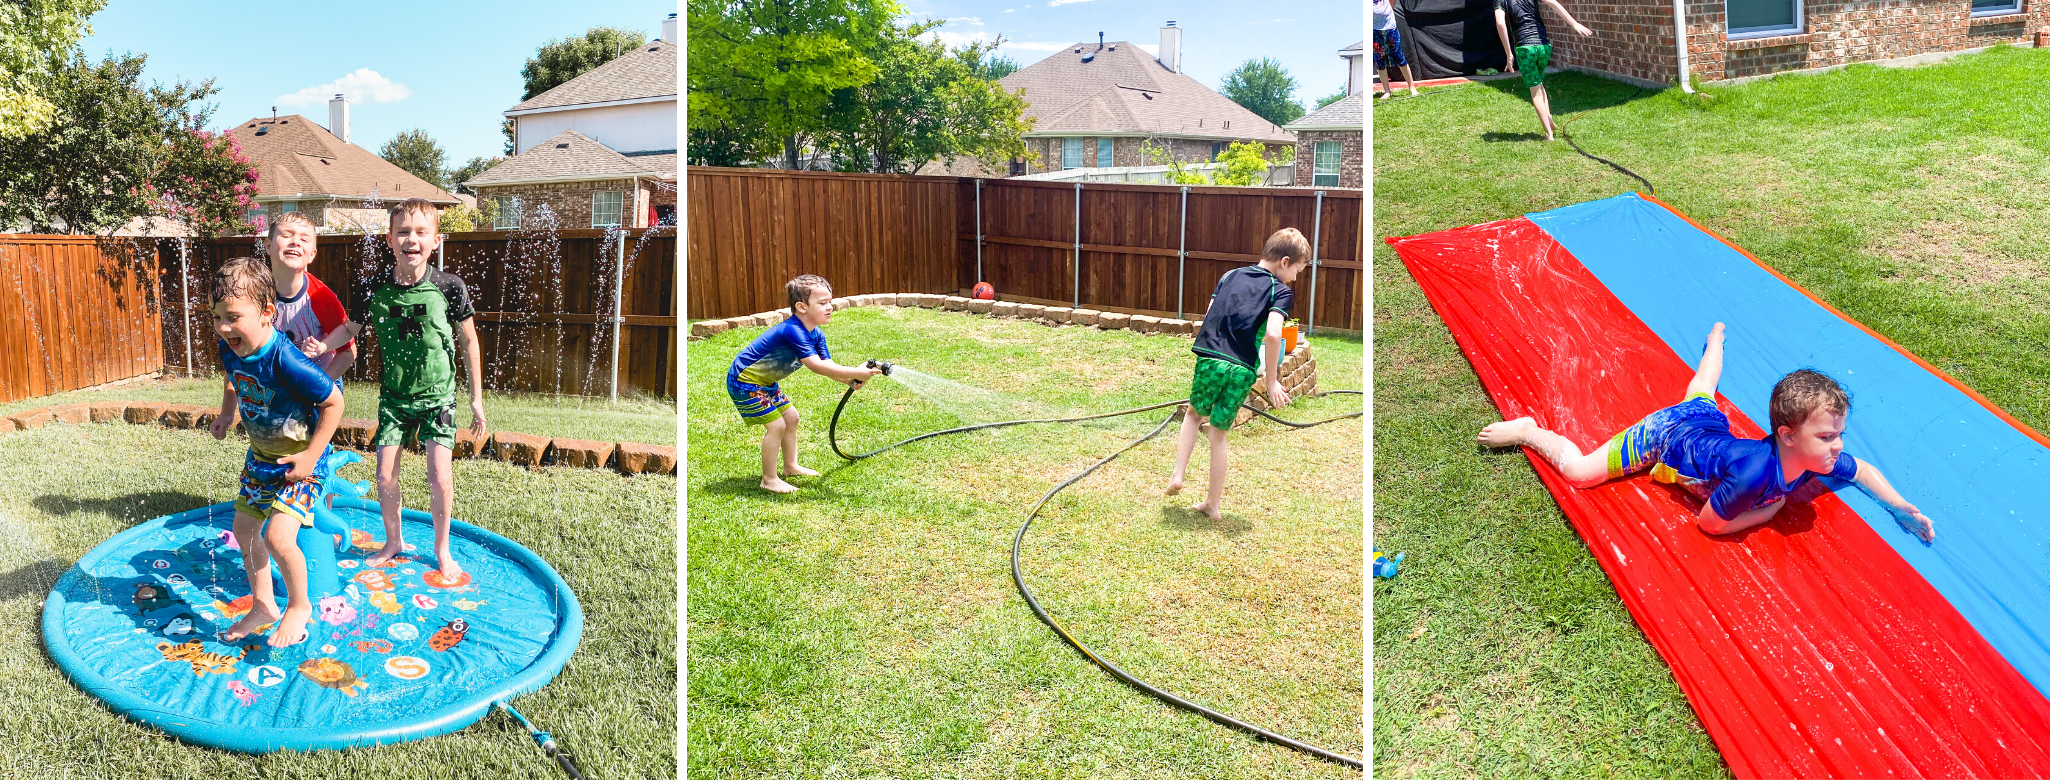 examples of backyard water activities